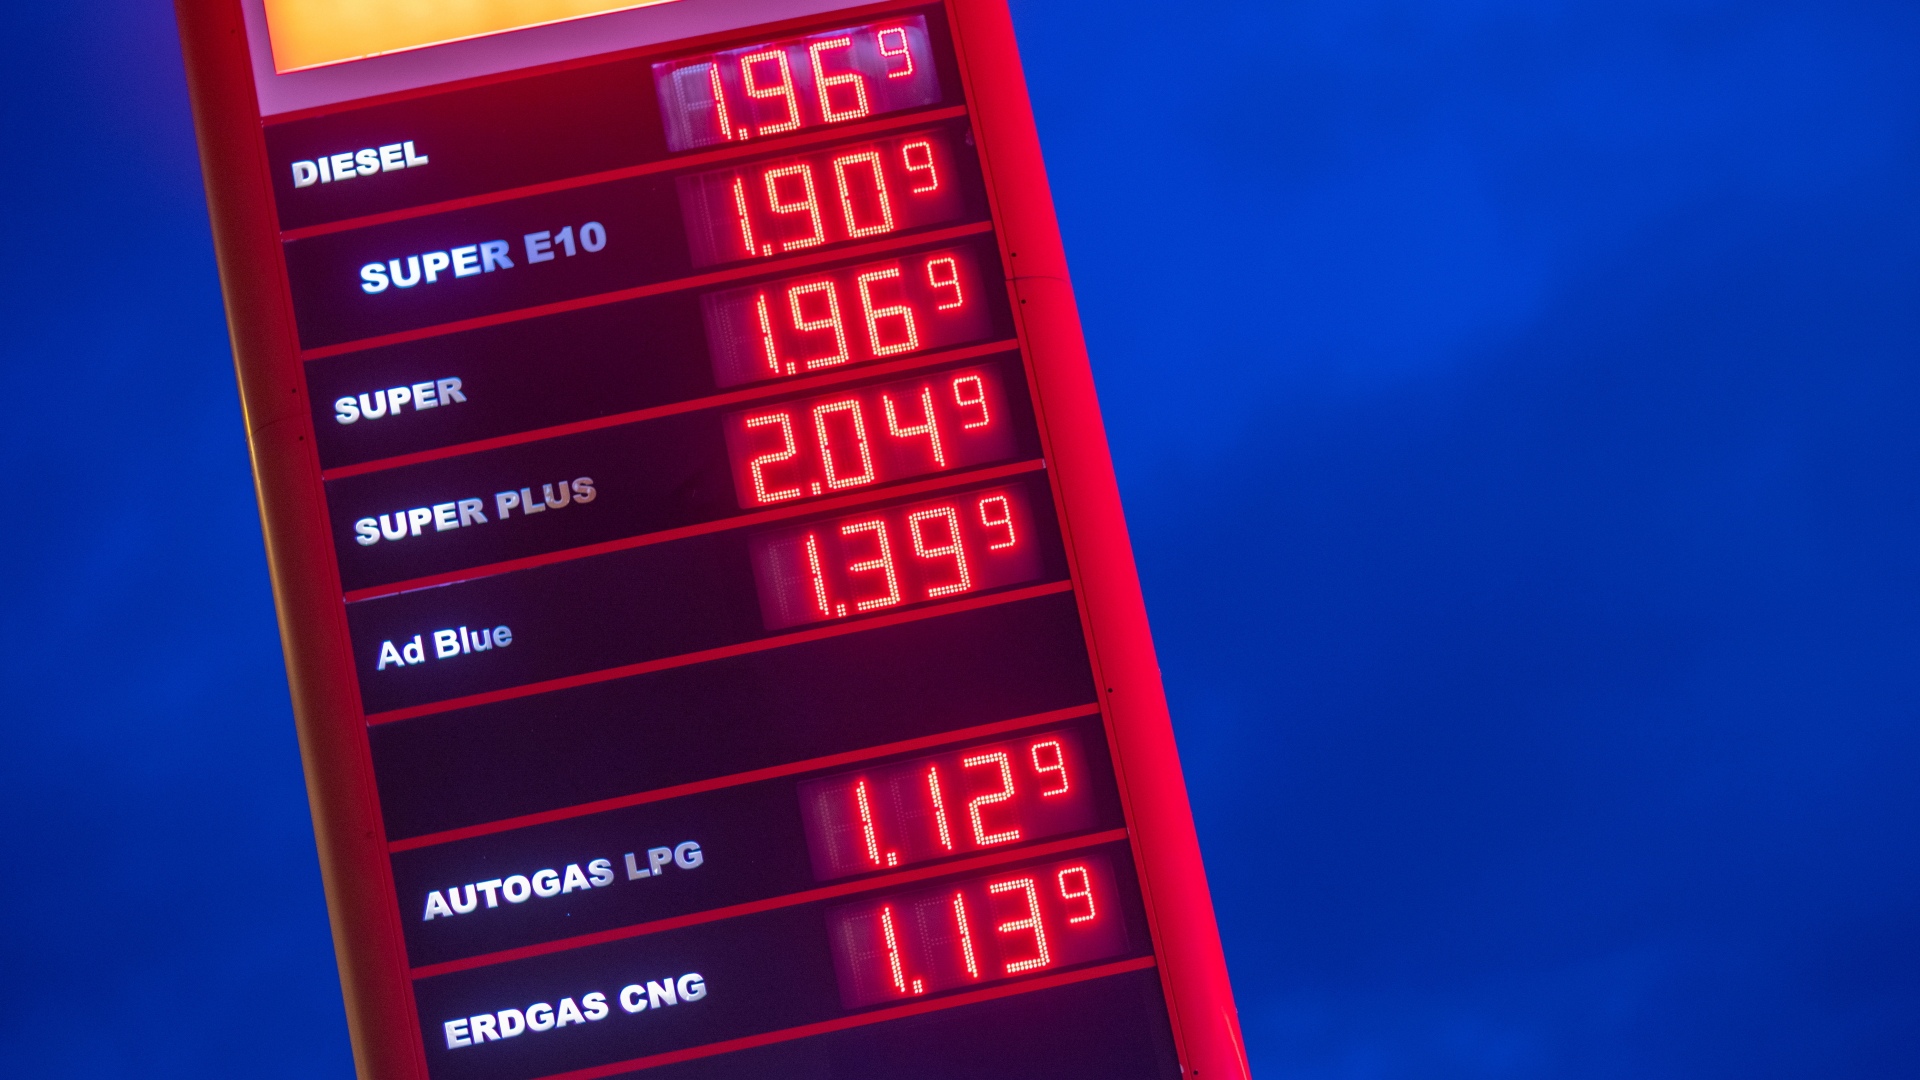 Die Literpreise für Kraftstoffe werden an einer Tankstelle angezeigt.